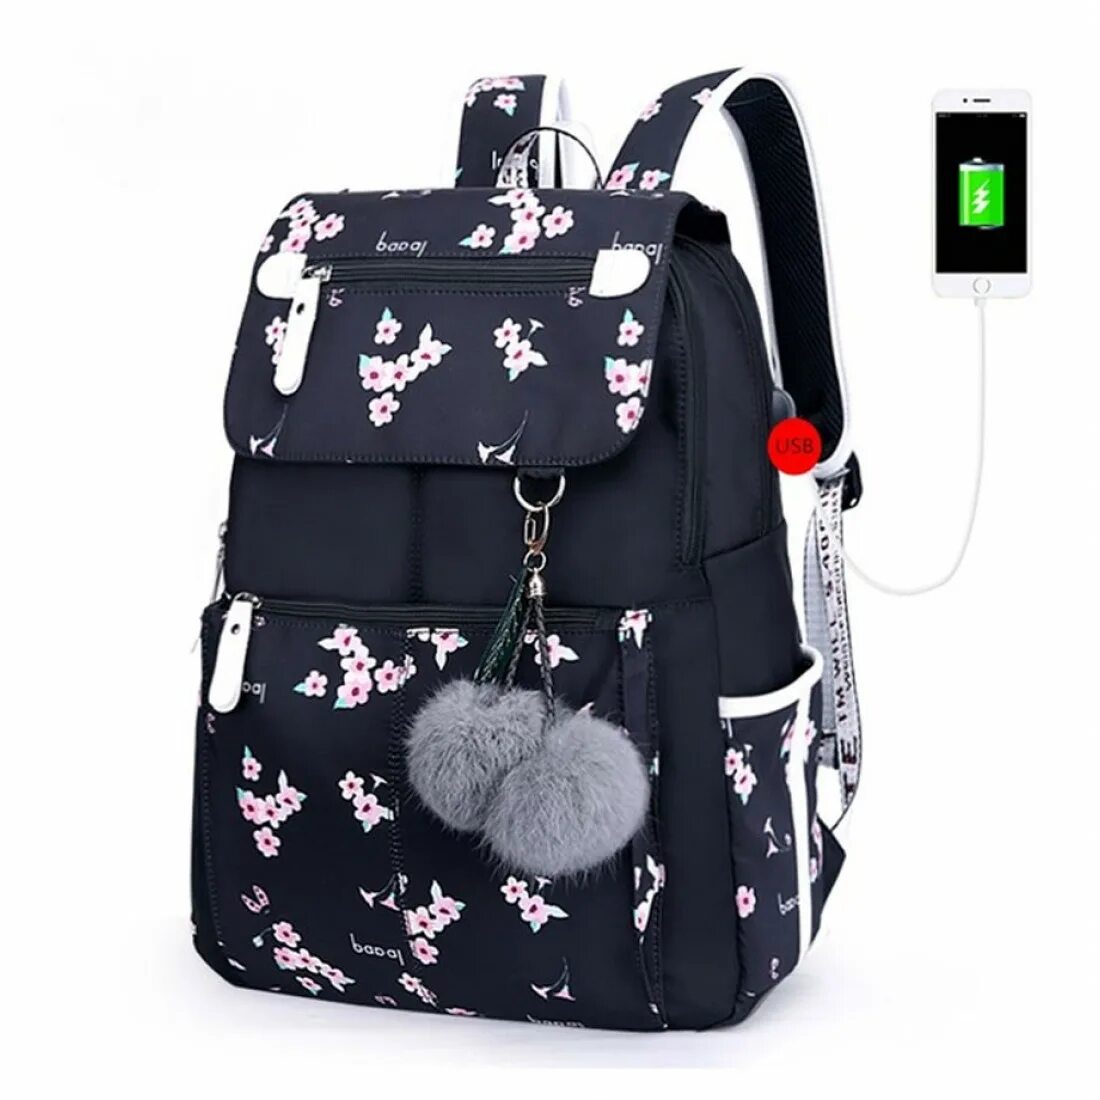 Рюкзак с USB fengdong. Сумка Школьная для девушки. Модные подростковые рюкзаки. Рюкзак для девочек подростков.